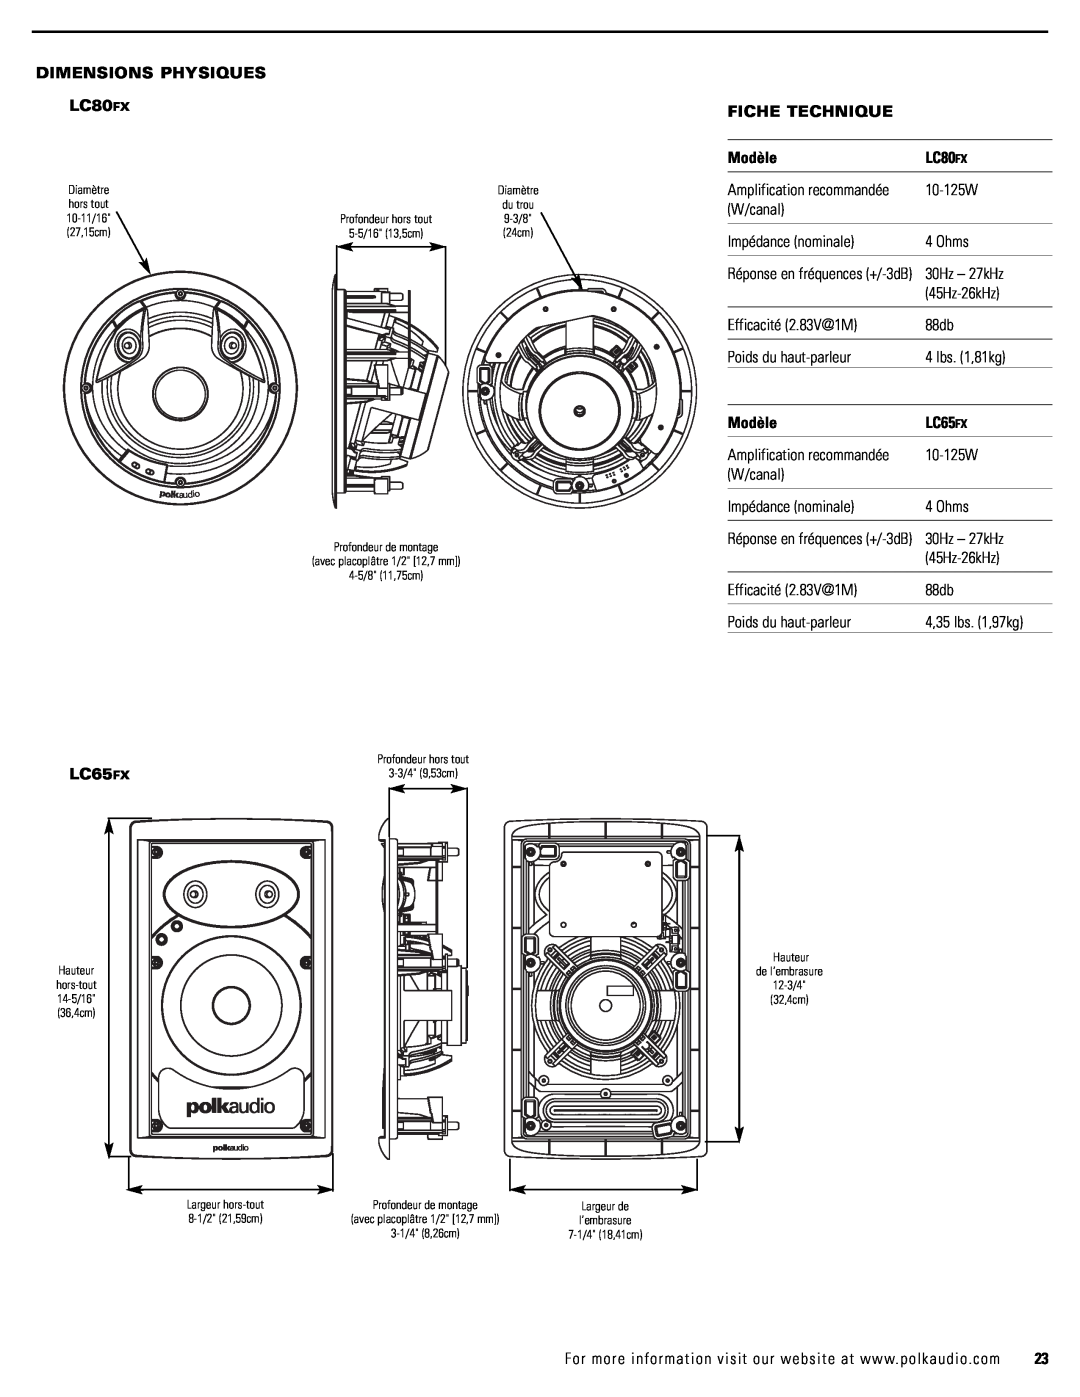 Polk Audio LC65FX owner manual DIMENSIONS PHYSIQUES LC80FX, Fiche Technique, Modèle 